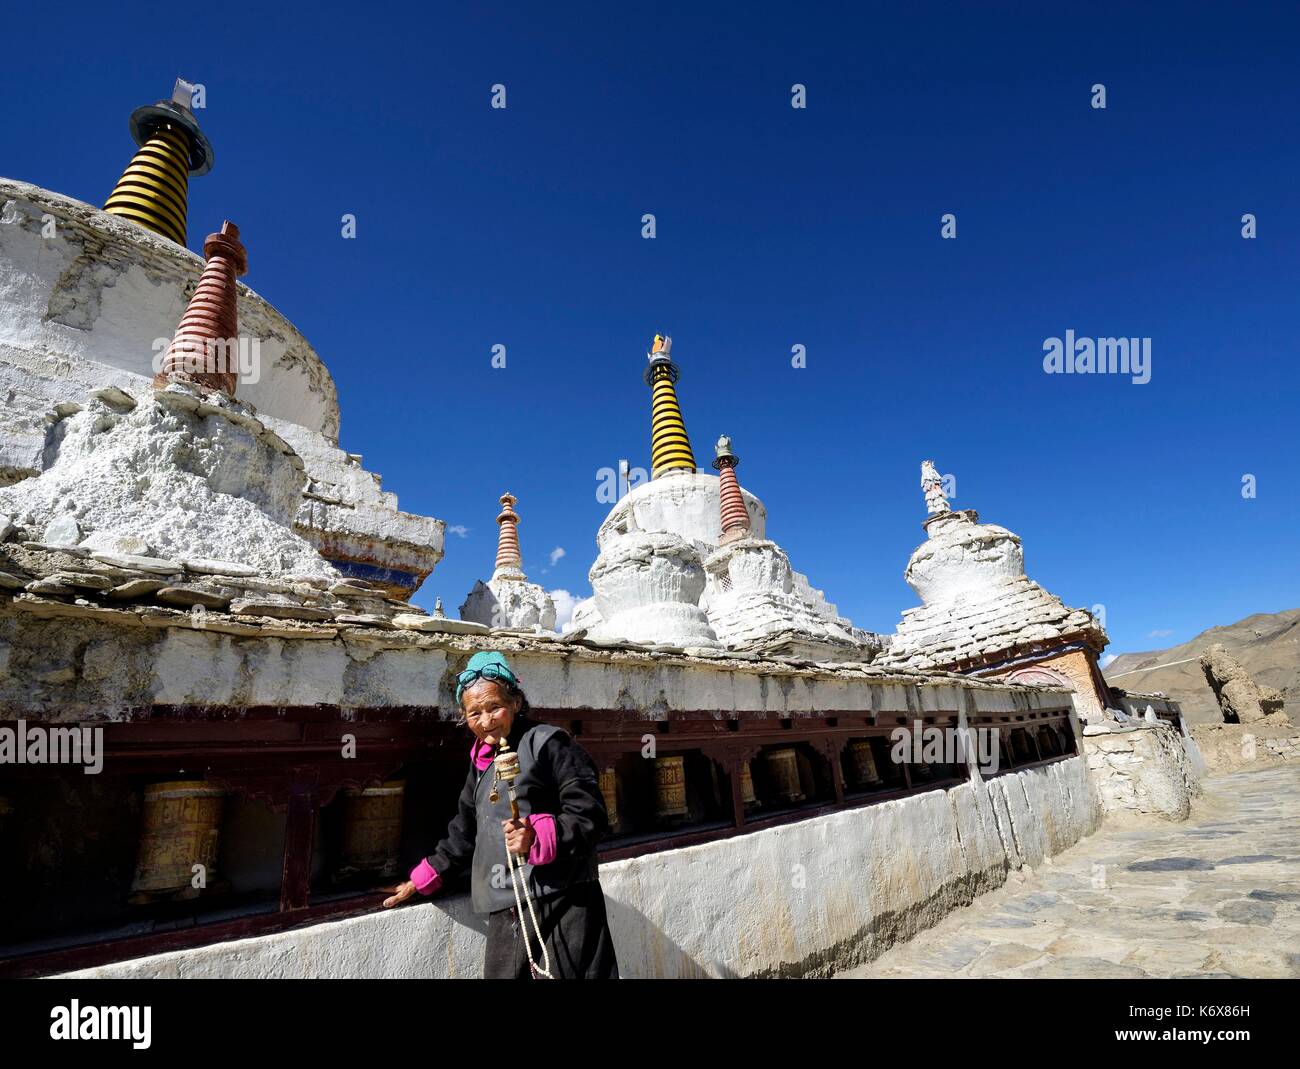 India, dello Stato del Jammu e Kashmir, Himalaya, Ladakh, Indus Valle, monastero buddista di Lamayuru (Yungdrung), vecchia donna con la preghiera ruota in prossimità stupa (chorten) Foto Stock